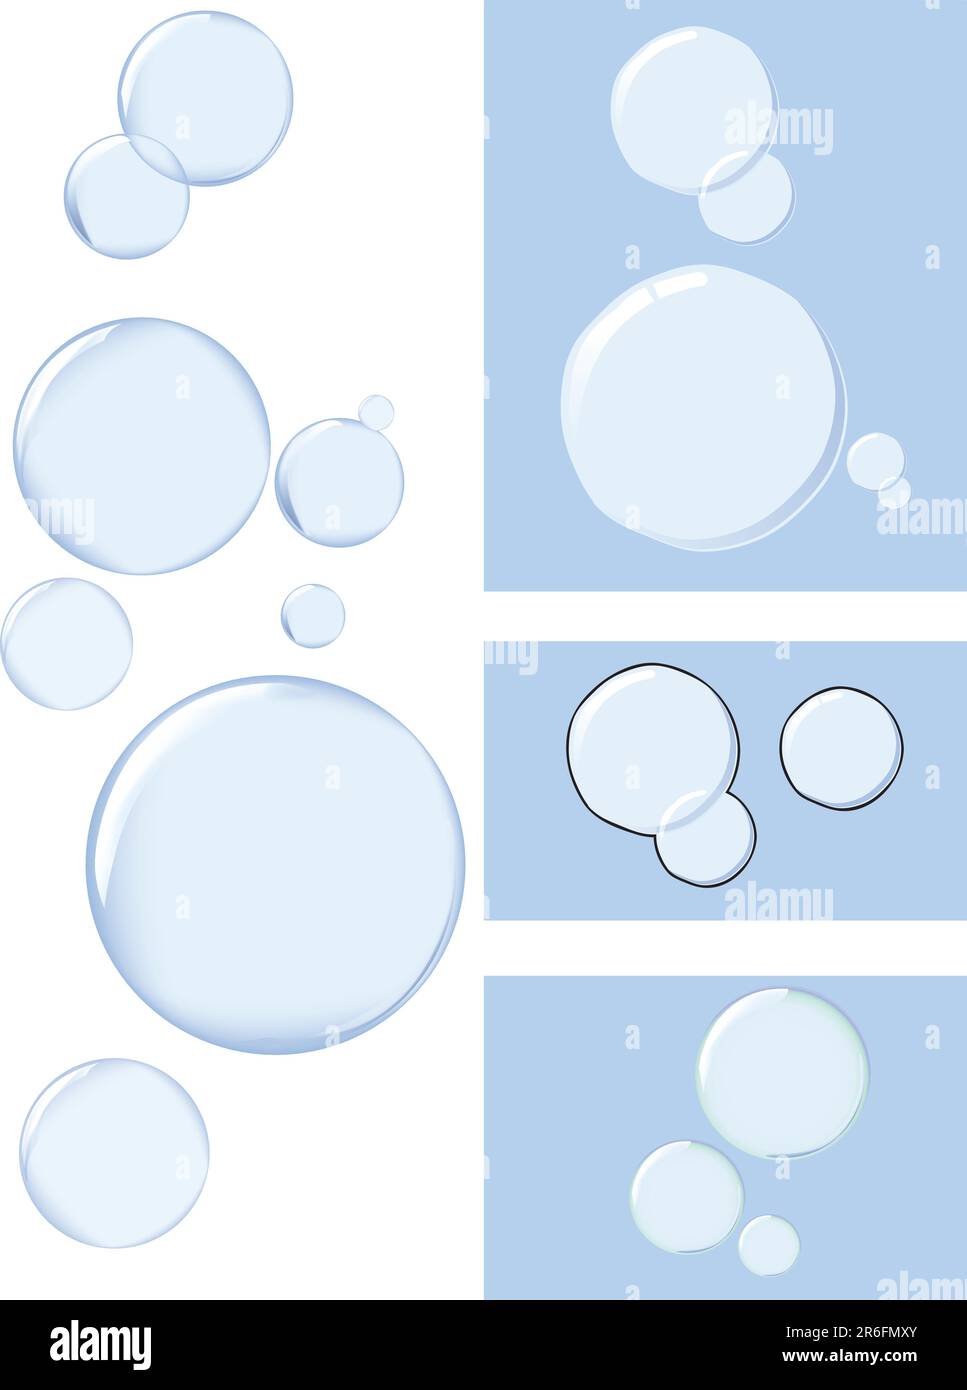 Blasen auf vier verschiedene Arten Stock Vektor